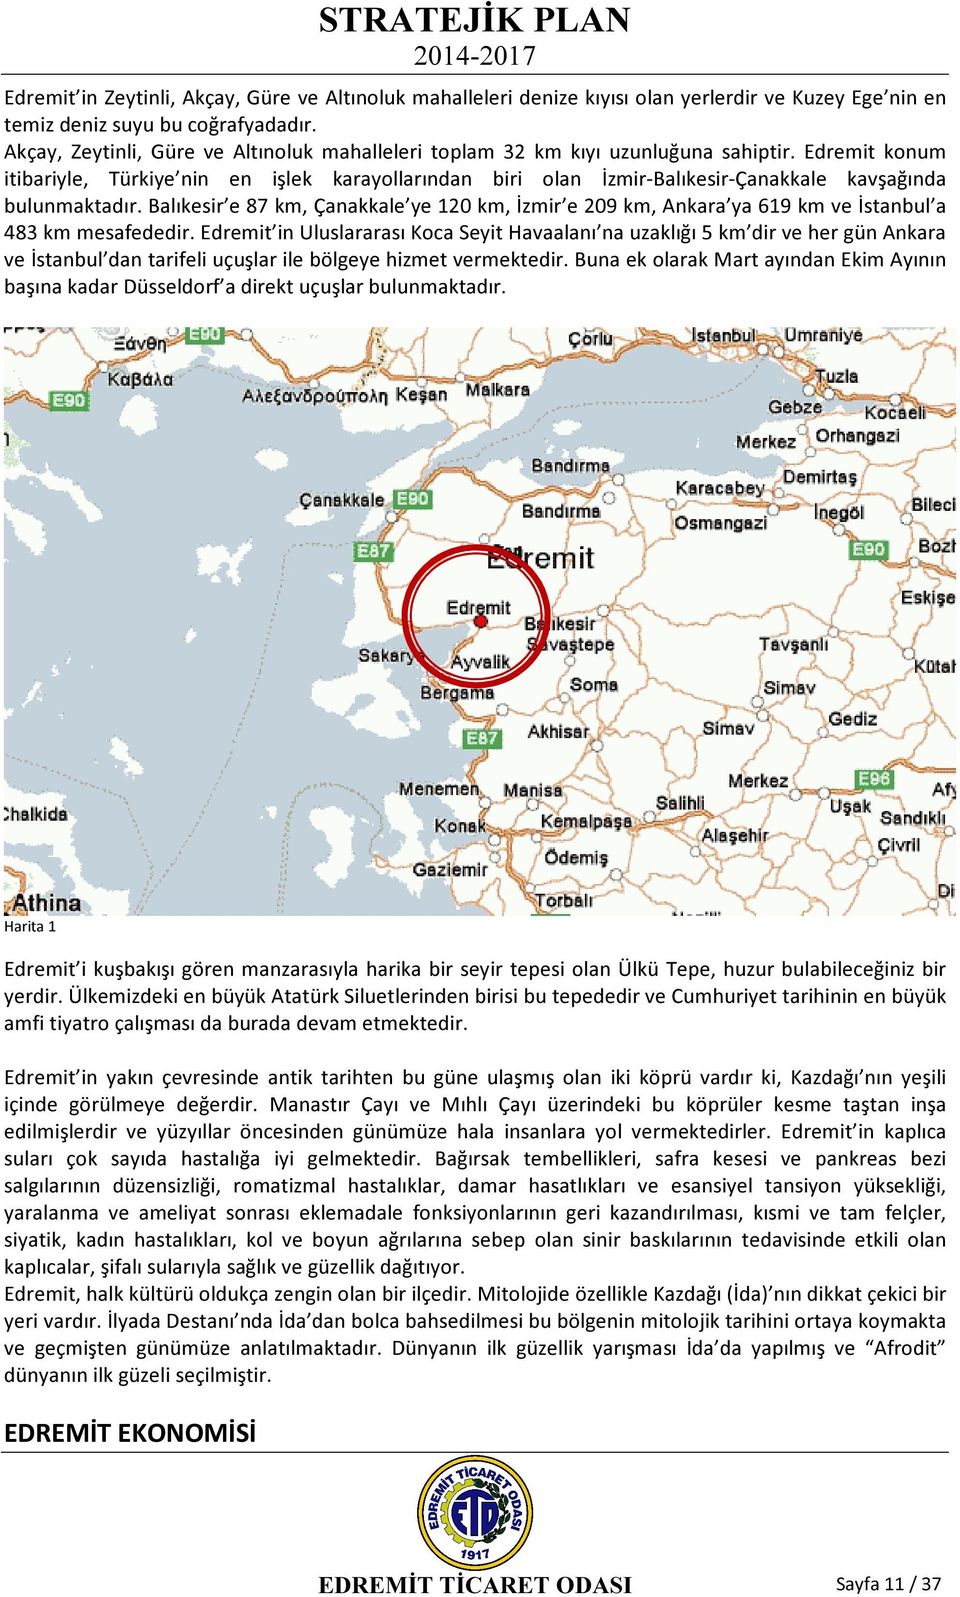 Edremit konum itibariyle, Türkiye nin en işlek karayollarından biri olan İzmir-Balıkesir-Çanakkale kavşağında bulunmaktadır.